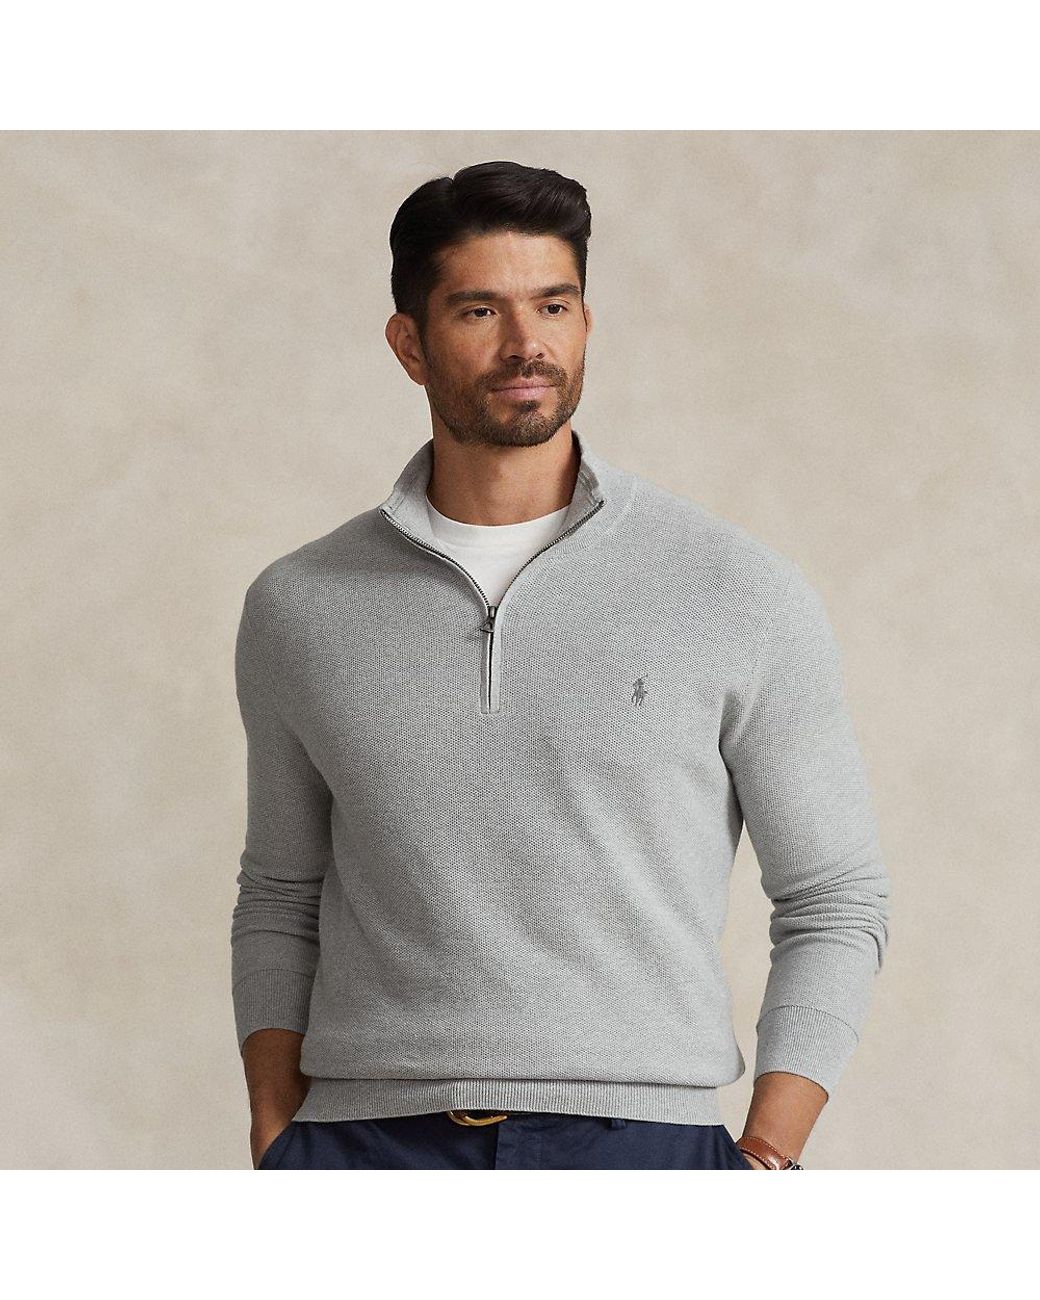 Ralph Lauren Ralph Lauren Mesh-knit Cotton Quarter-zip Sweater in